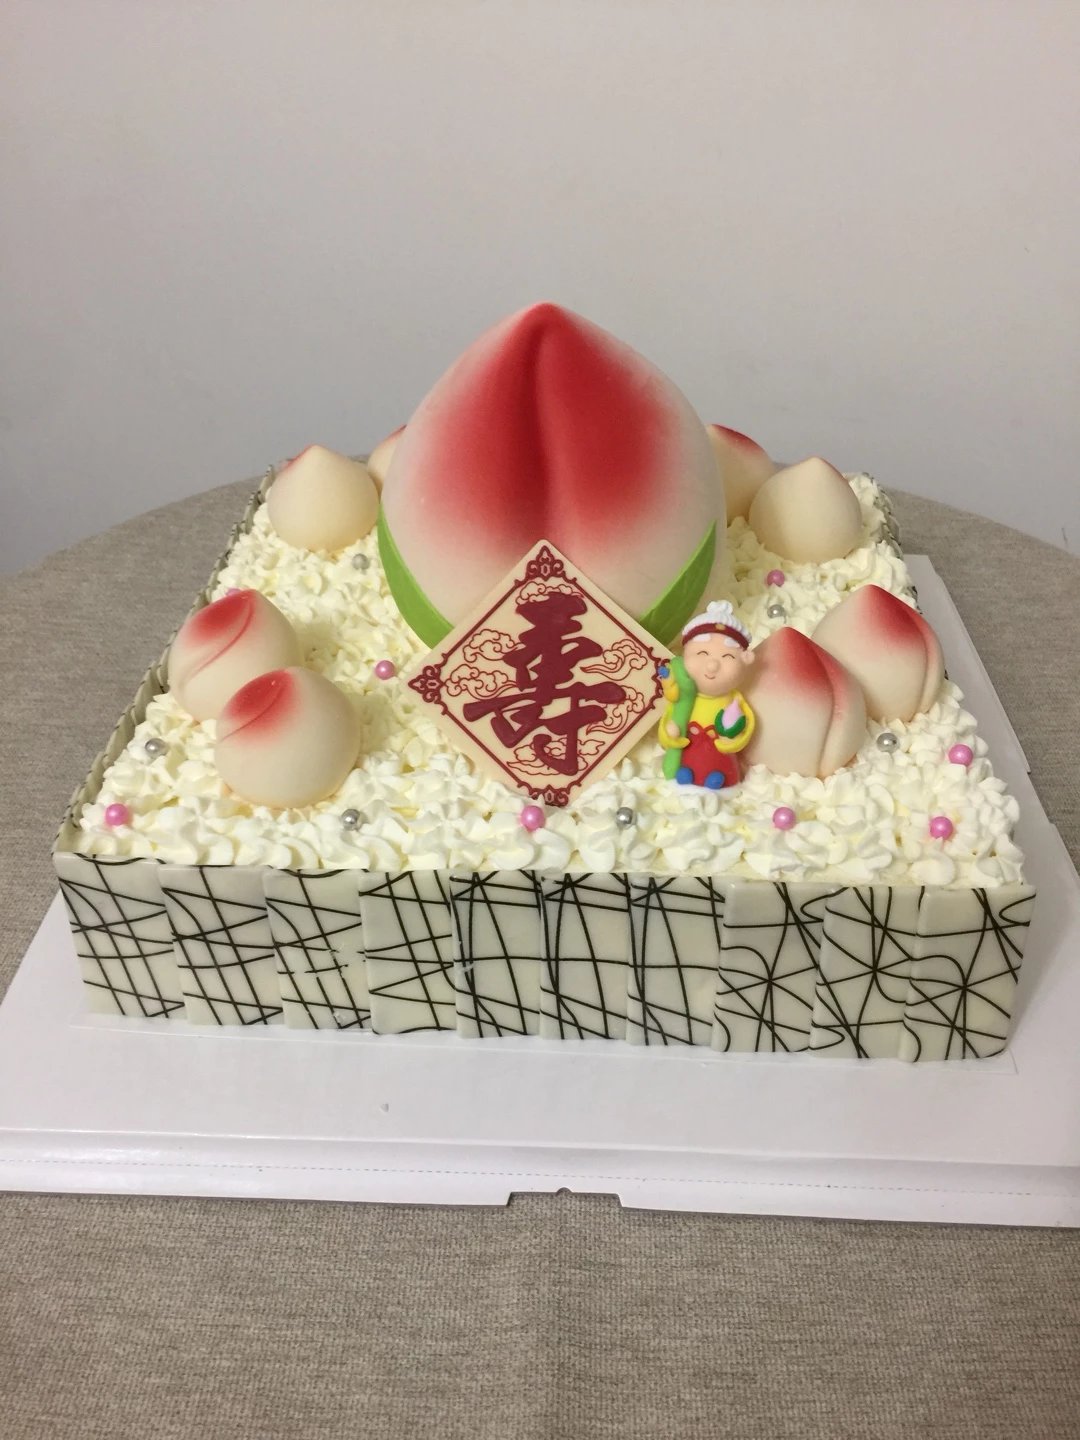 【预定】祝寿单层生日蛋糕三种口味蛋糕:原味水果蛋糕,黑巧奶油蛋糕